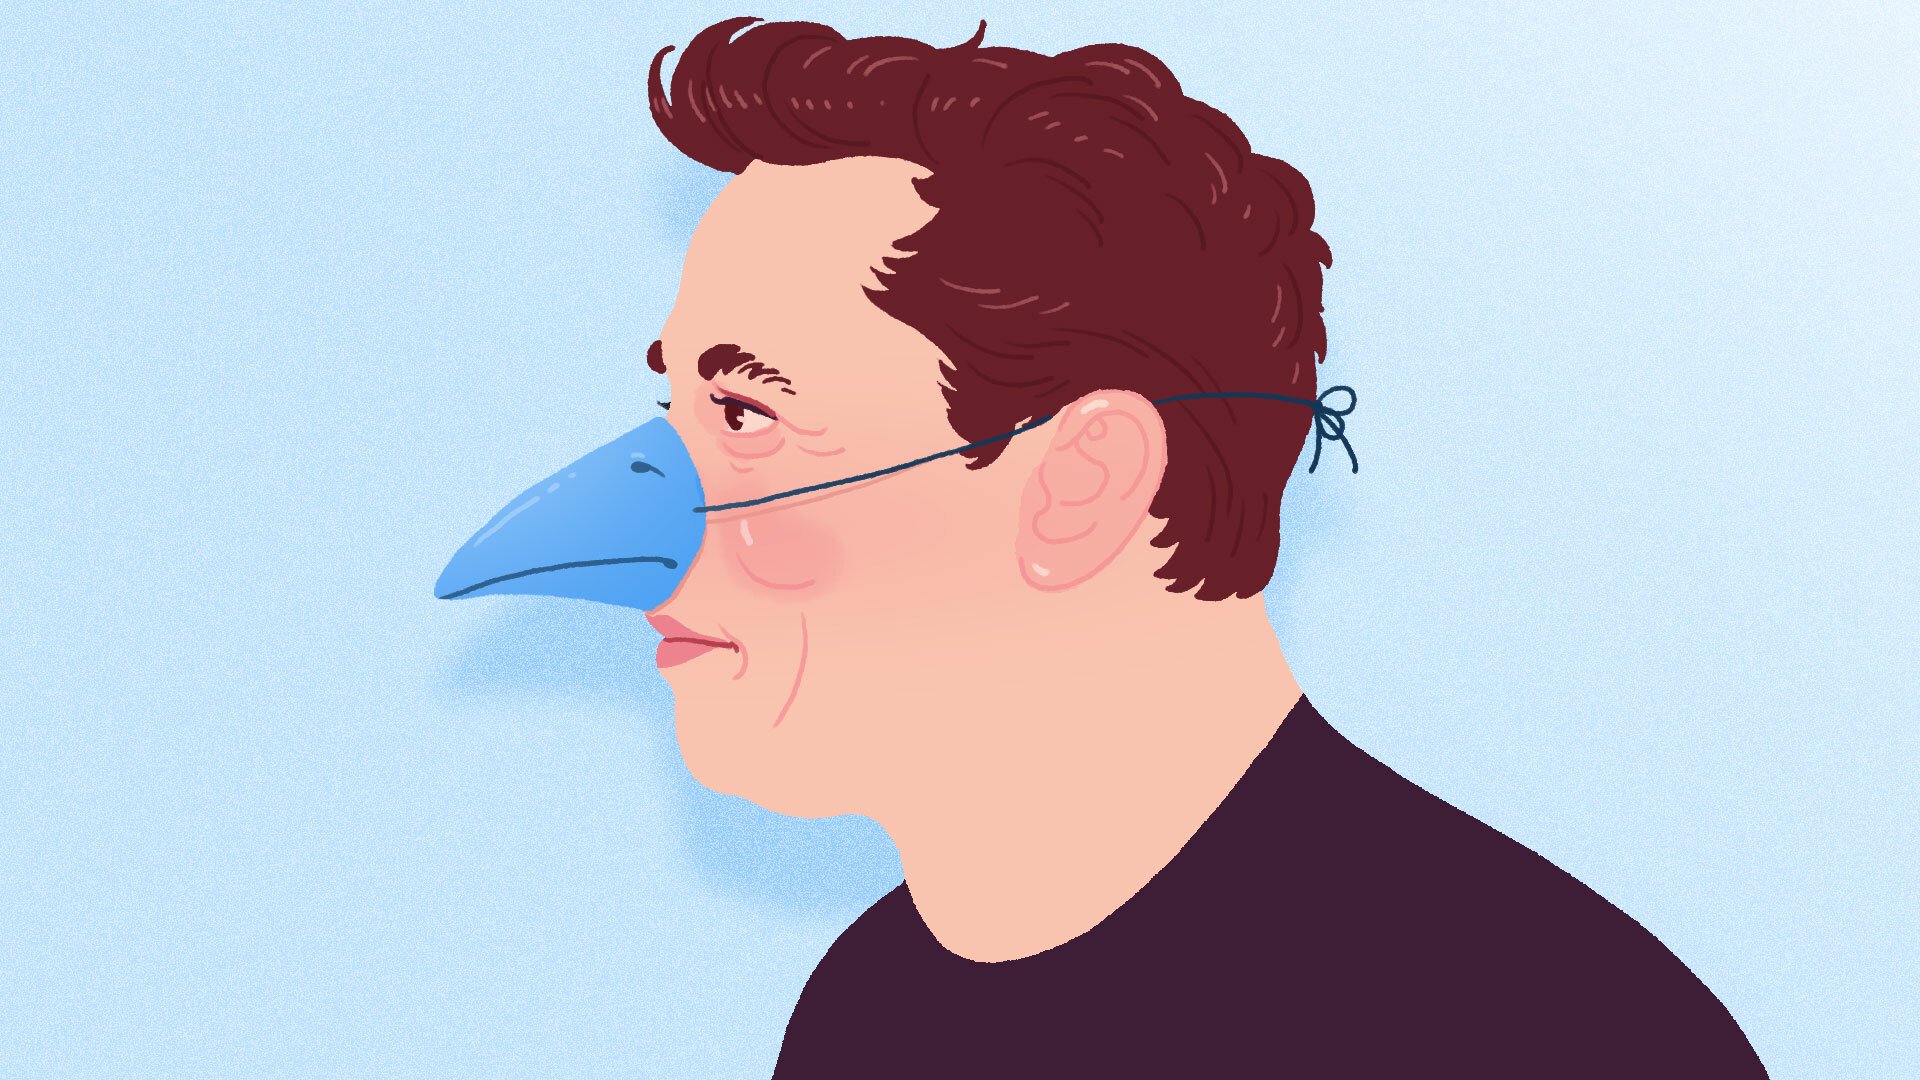 Elon Musk wearing a blue bird's beak.